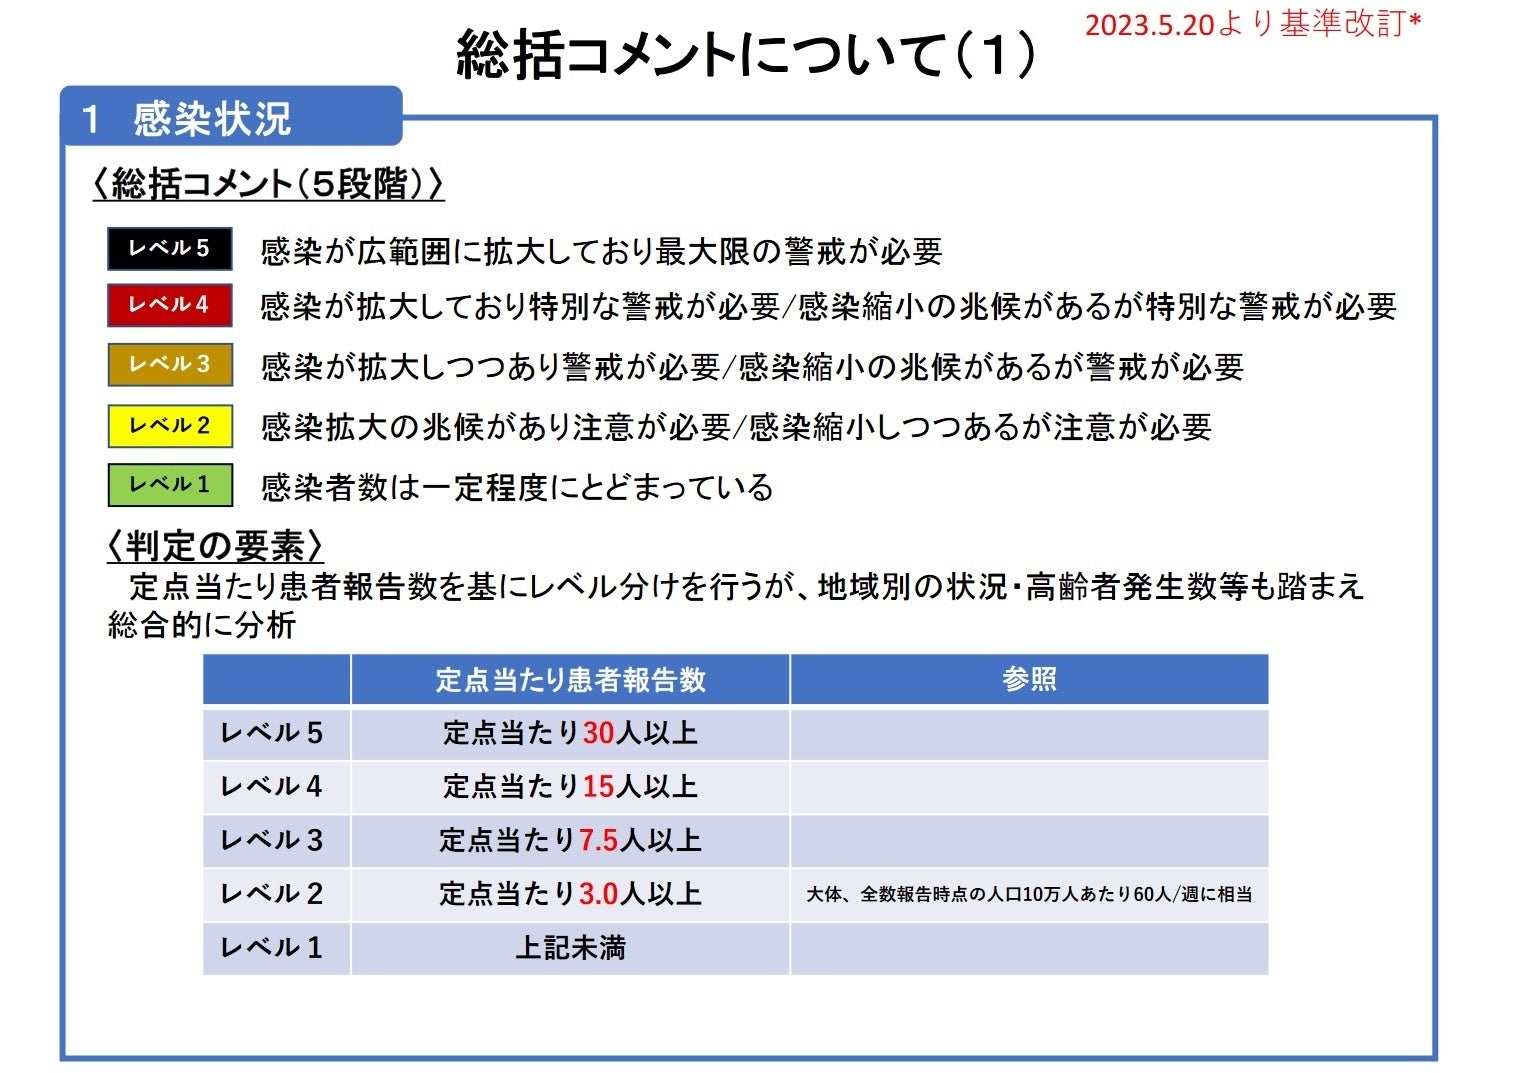 【岡山大学】岡山県内の感染状況・医療提供体制の分析について（2024年3月15日現在）